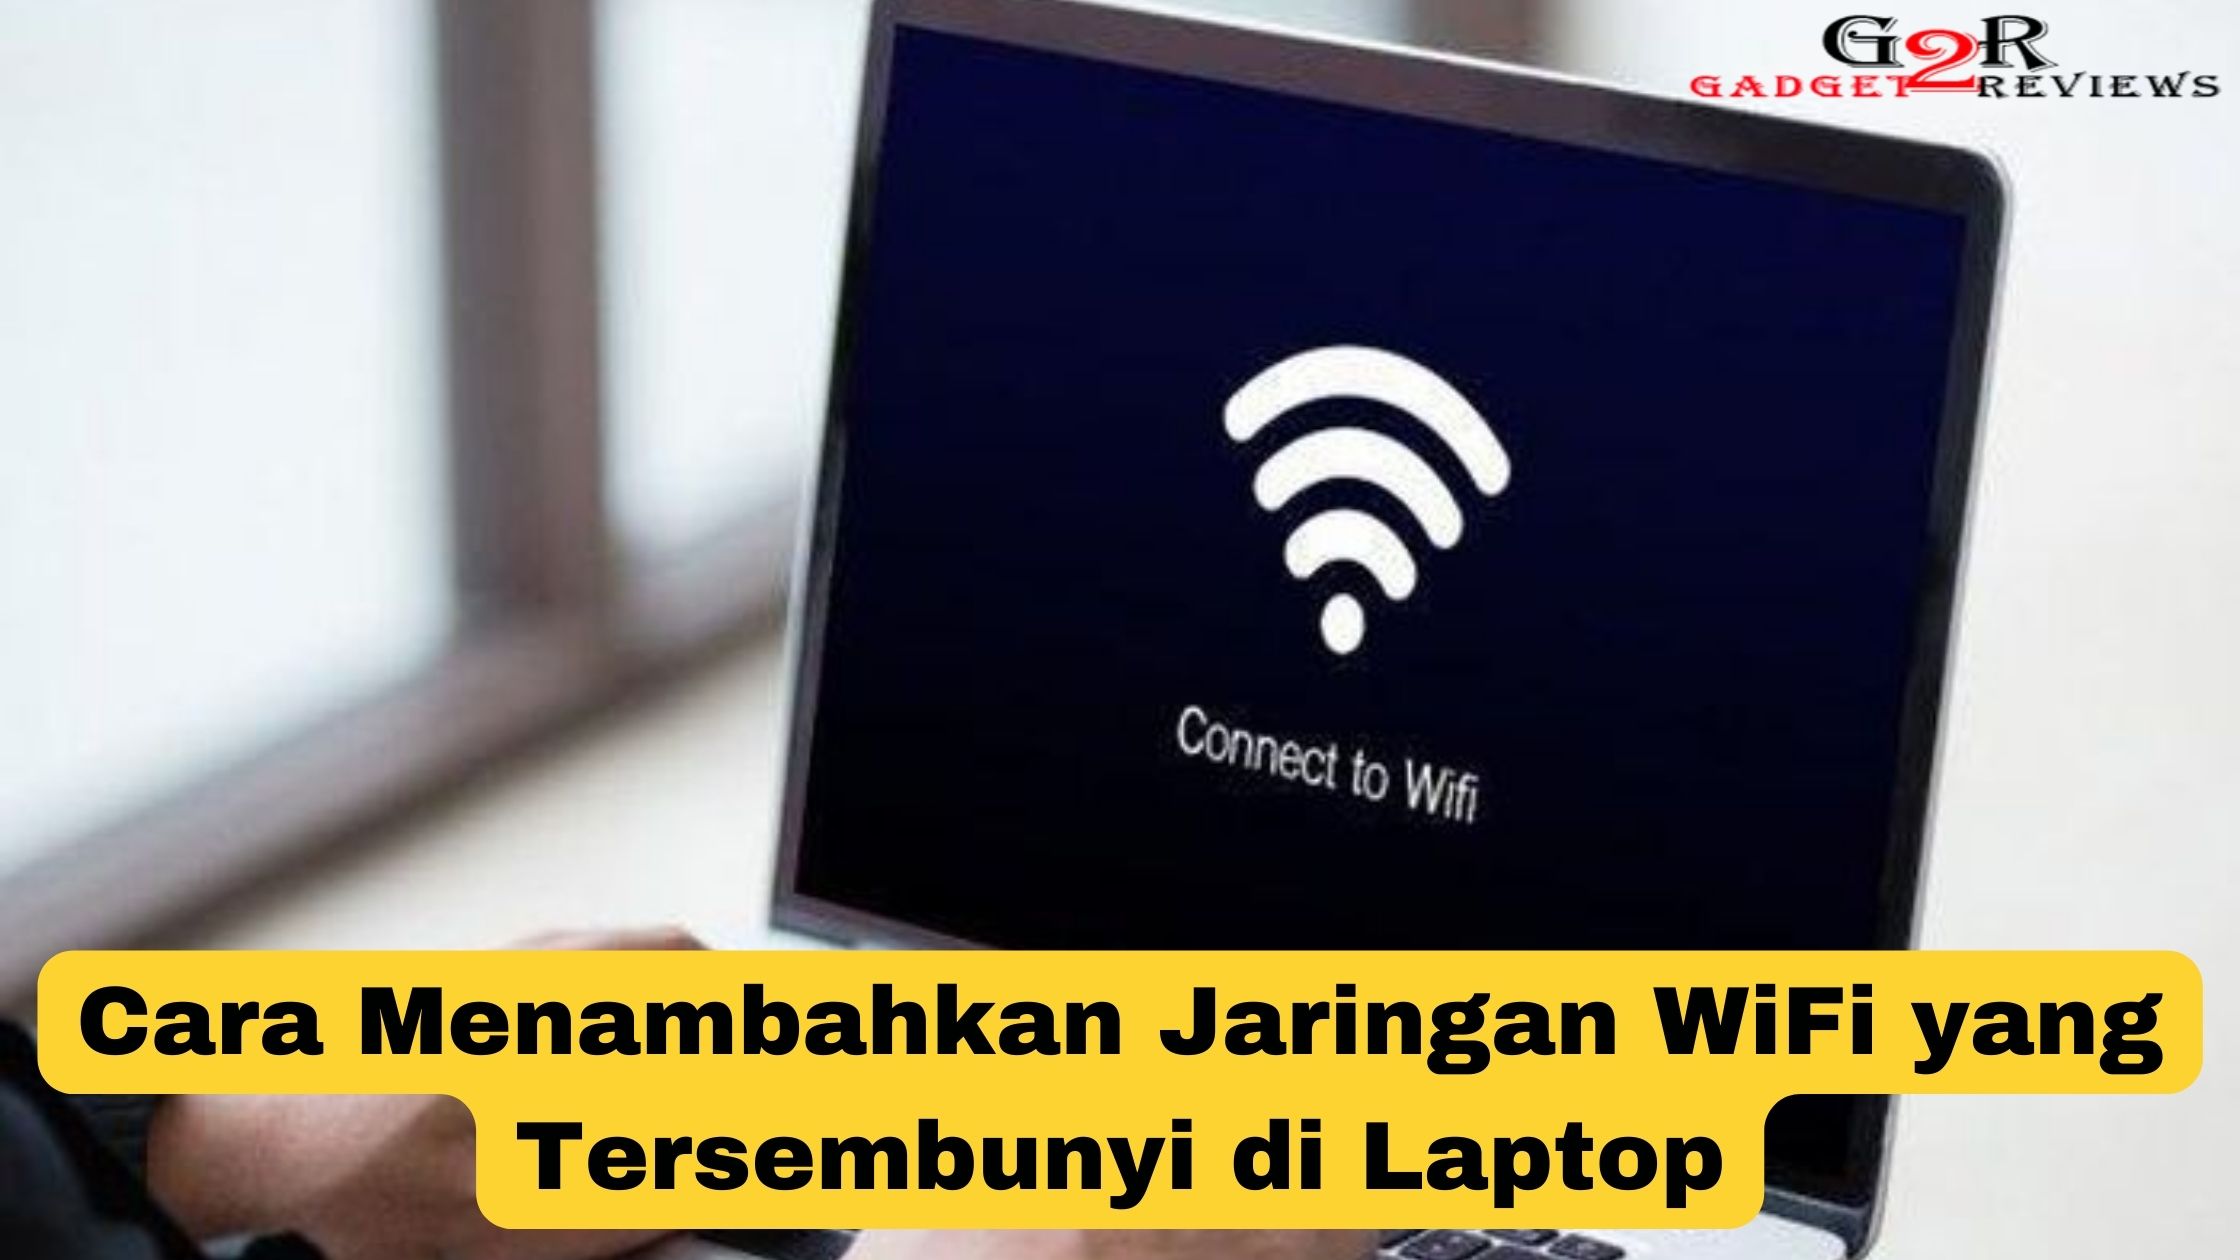 Cara menambahkan jaringan WiFi yang tersembunyi di laptop